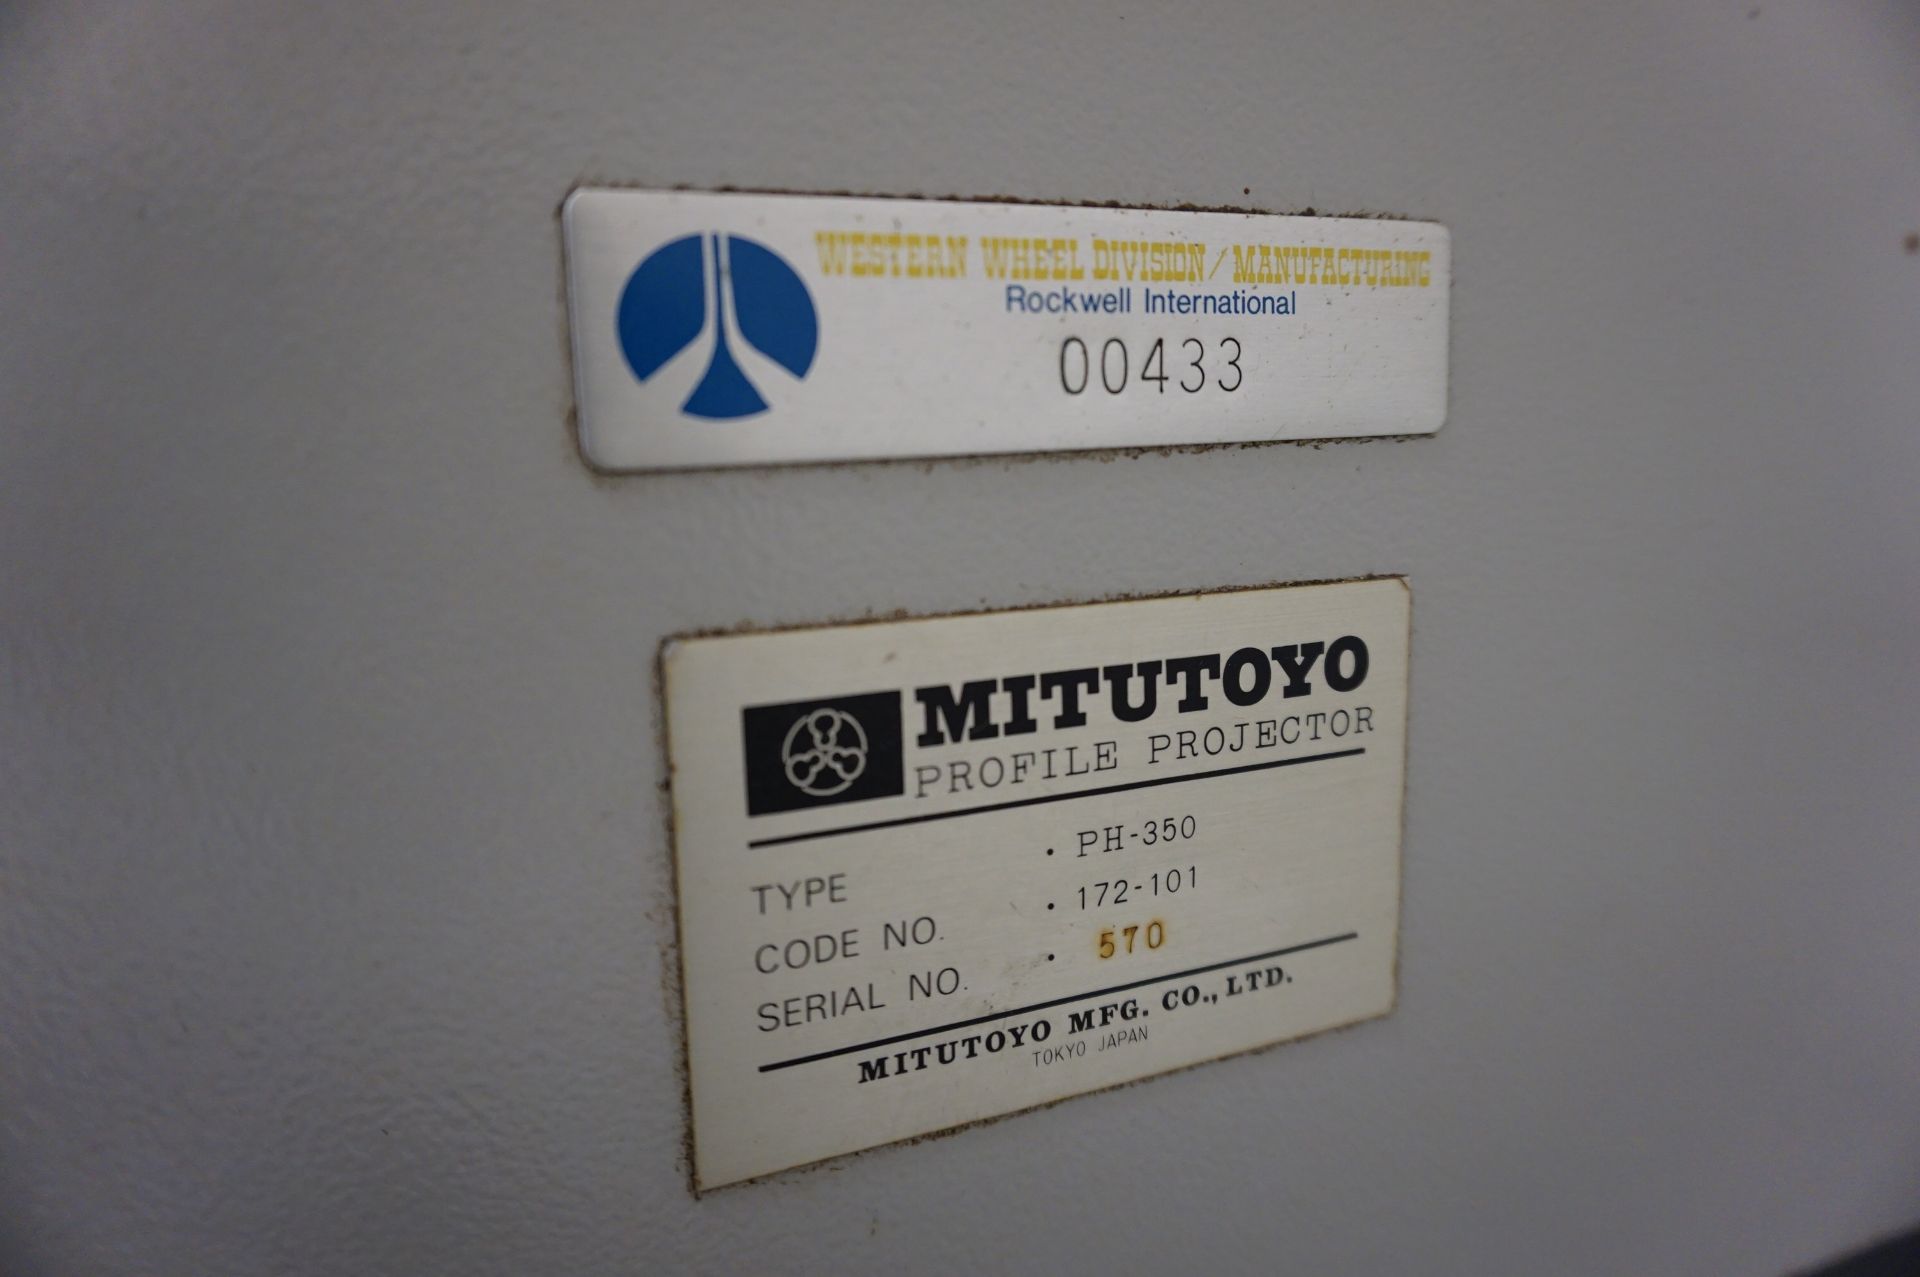 MITUTOYO PH-350 OPTICAL COMPARATOR, CODE 172-101, S/N 570 WITH HEIDENHAIN ND-1100 QUADRA-CHEK DRO, - Image 4 of 7